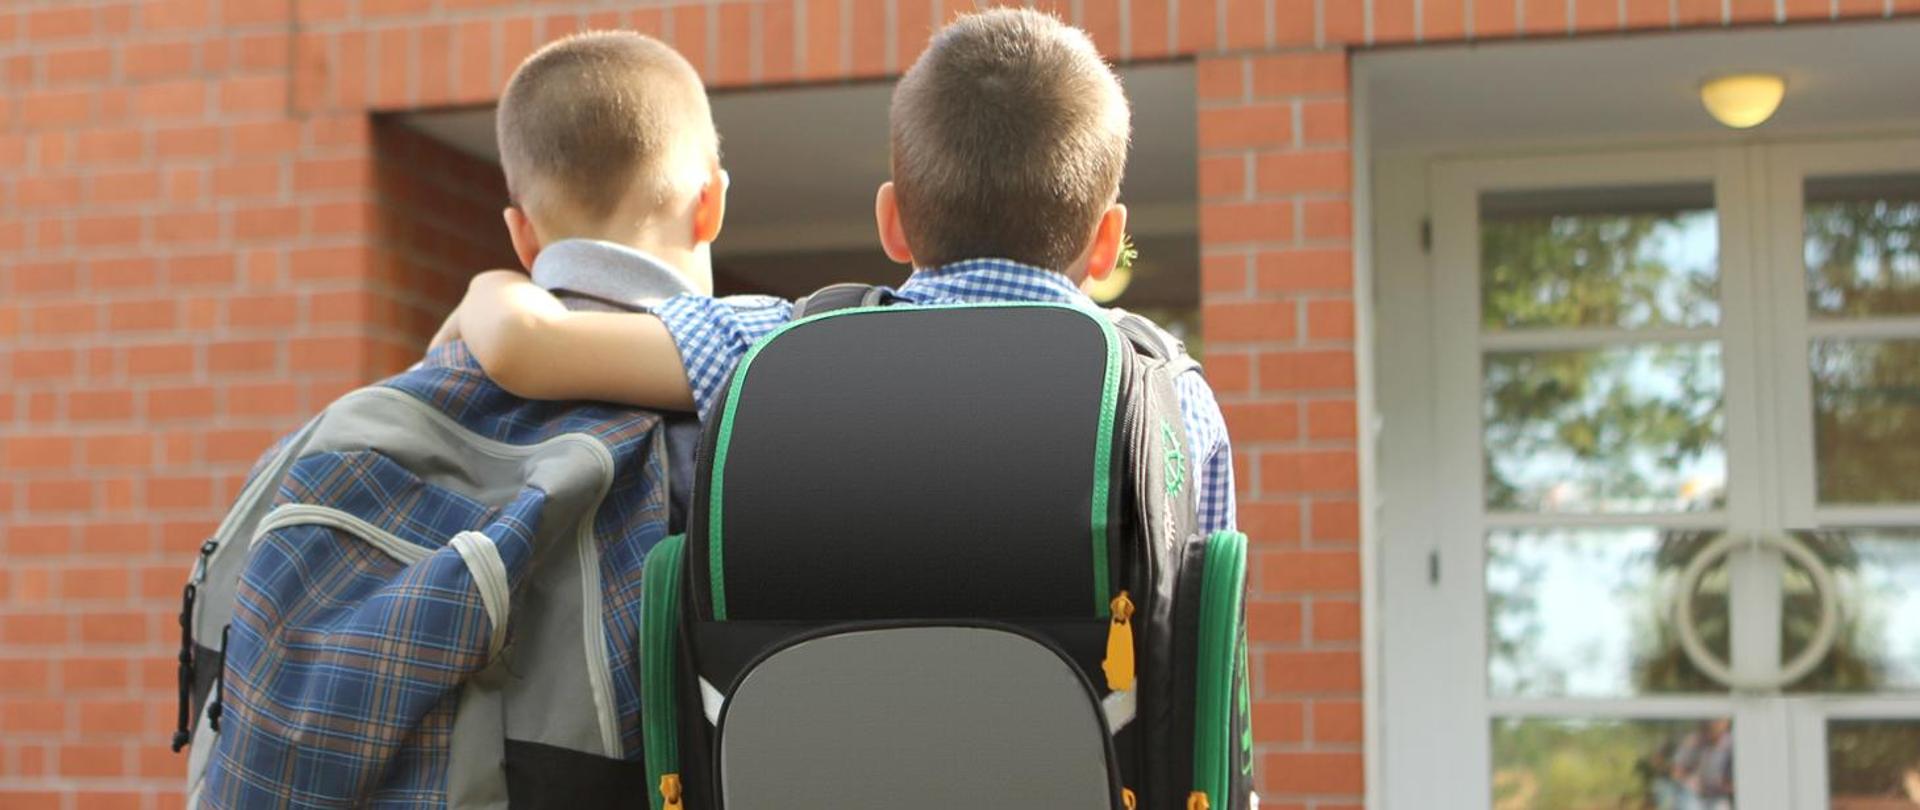 dwóch chłopców w wieku szkolnym odwróconych tyłem do obiektywu z plecakami na plecach. Tło stanowi wejście do budynku najprawdopodobniej szkoły.